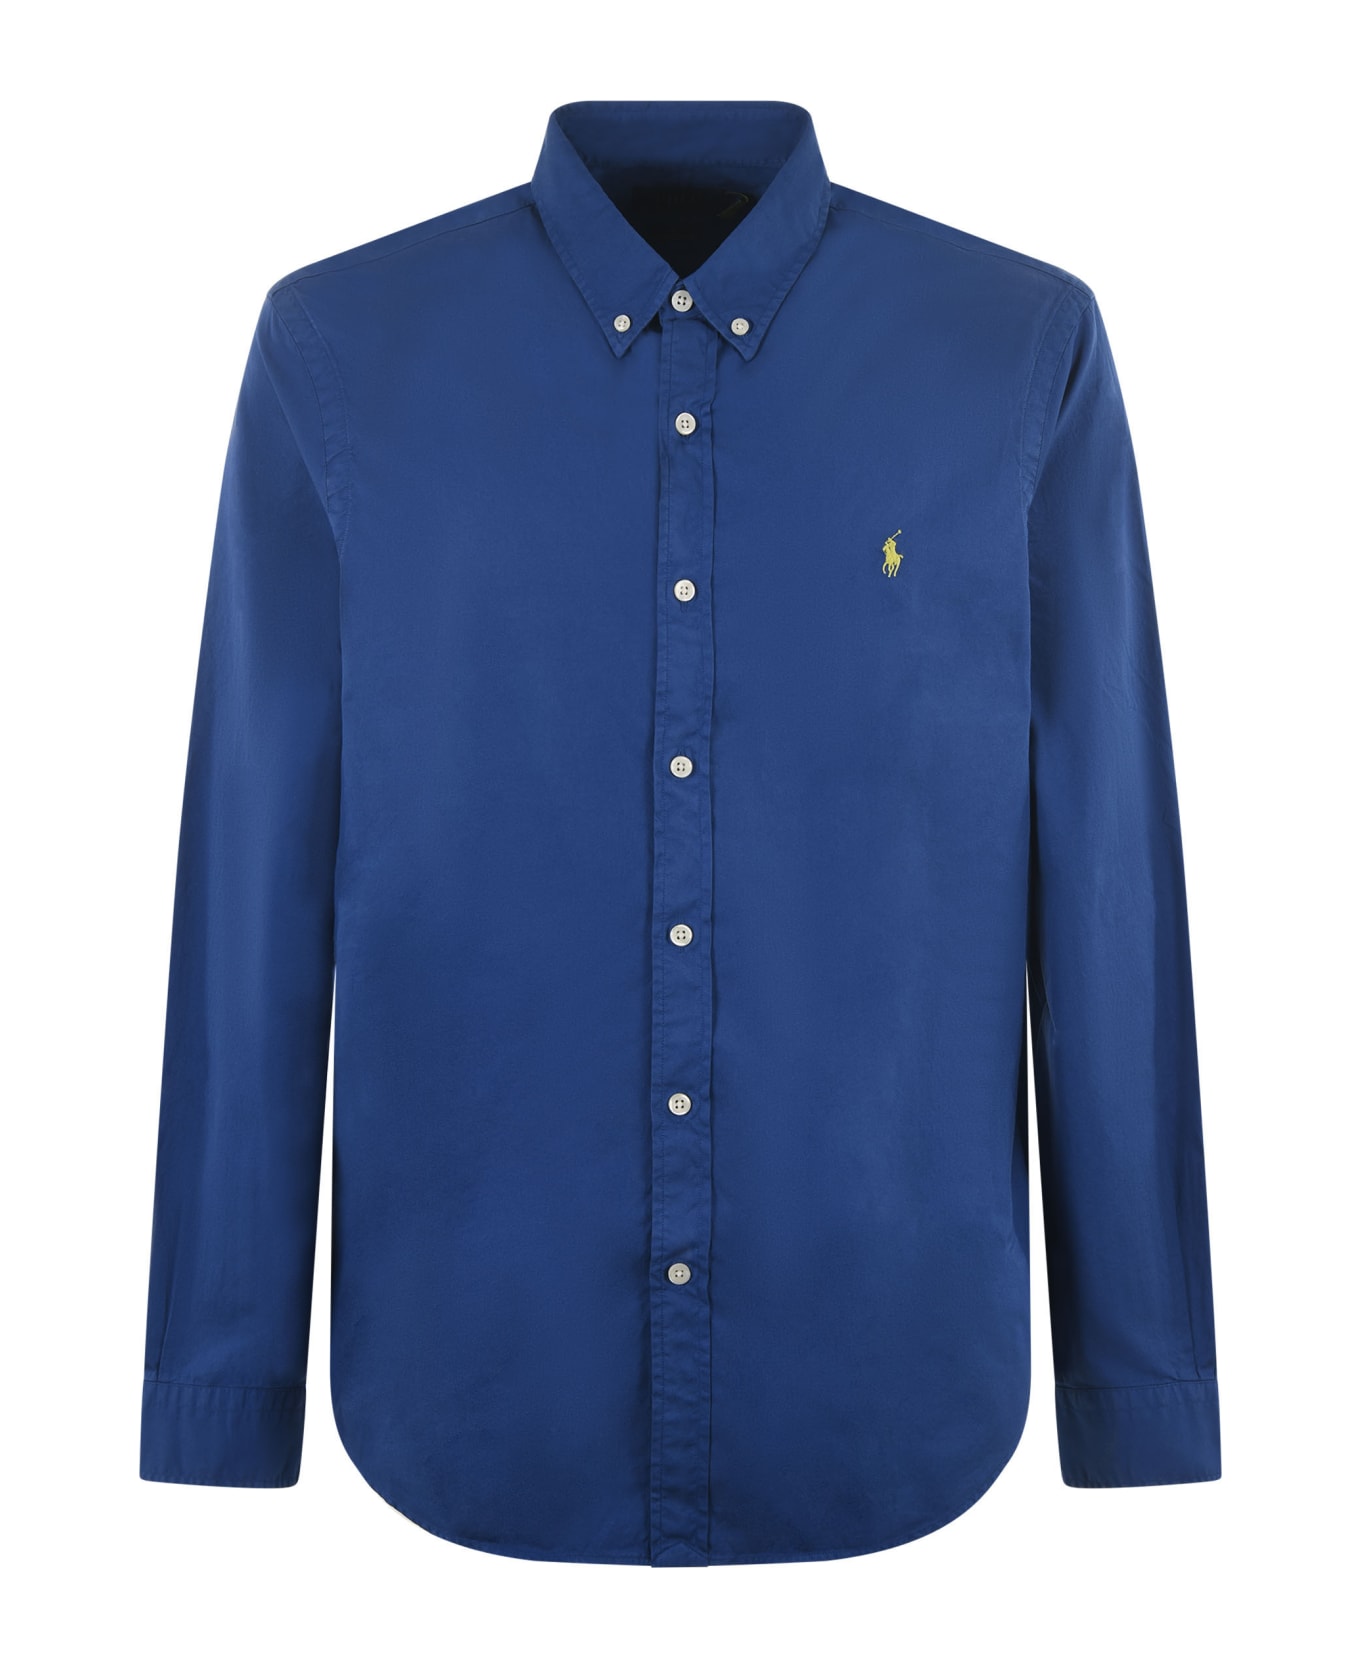 Polo Ralph Lauren Shirt - Blu シャツ